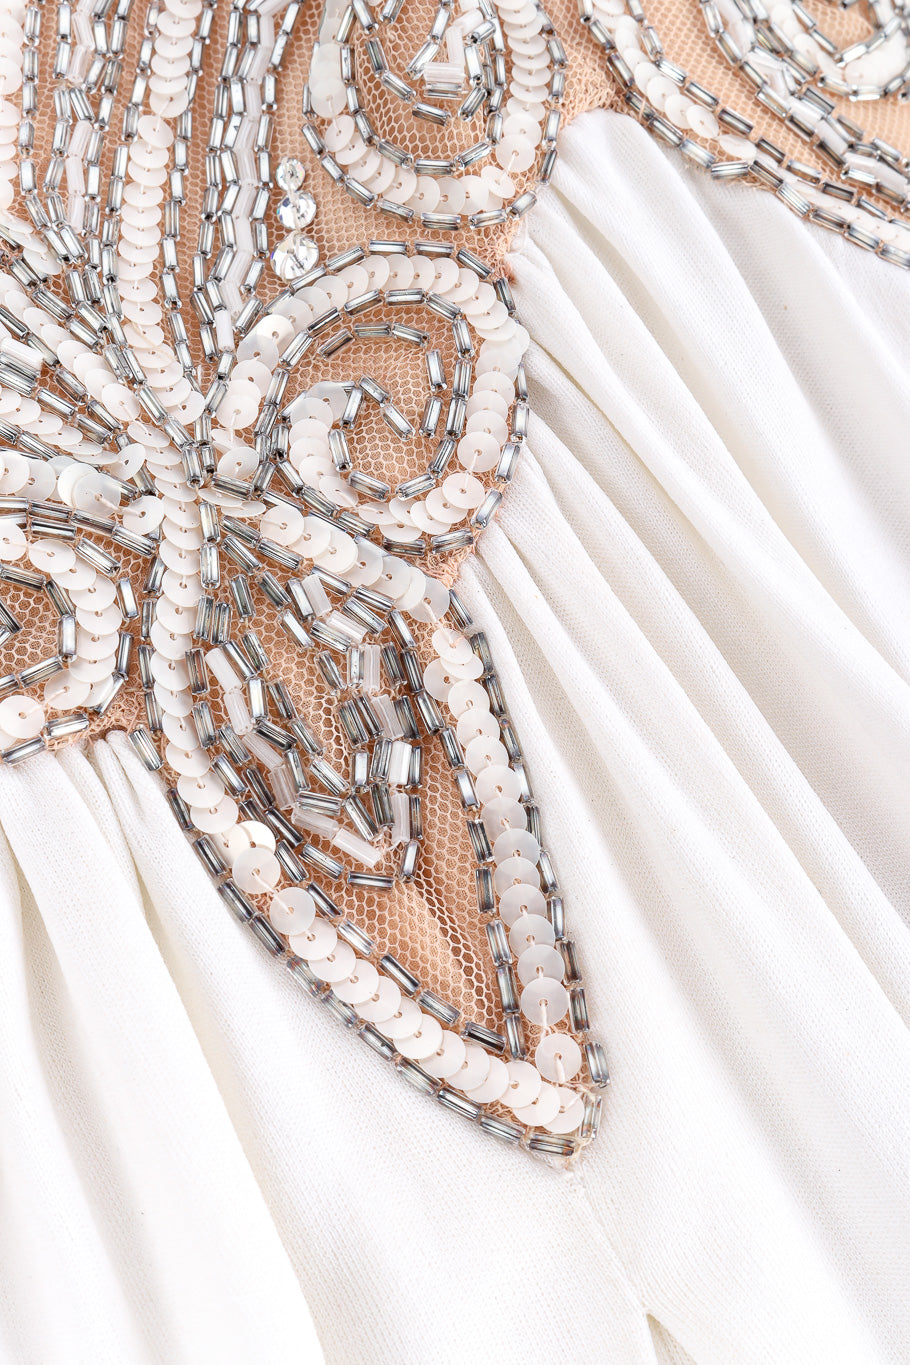 Bob Mackie sequin swirl empire gown beaded details @recessla